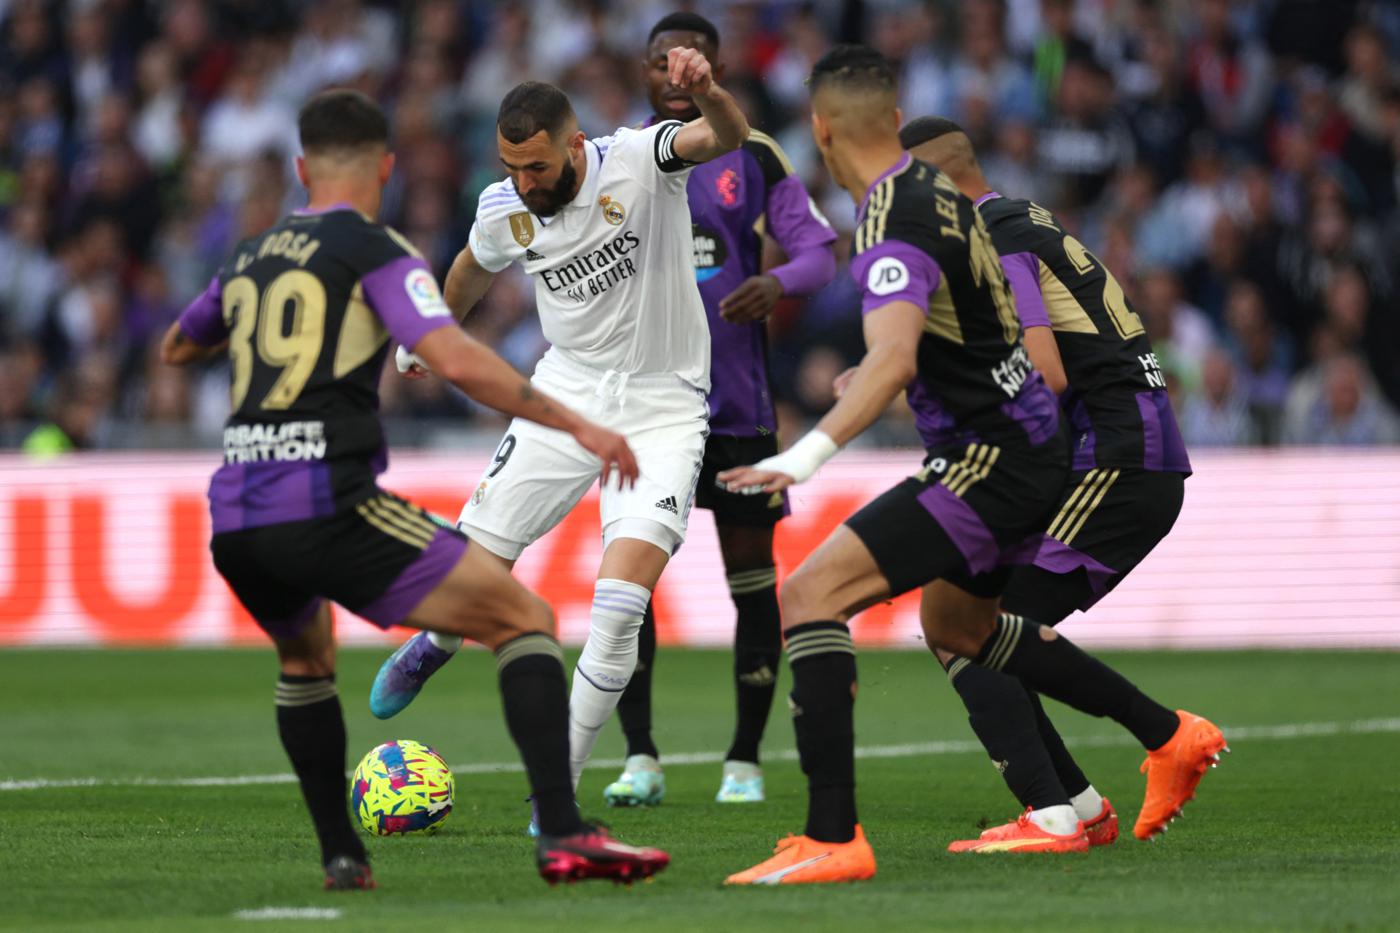 Real - Valladolid - 6:0. Mistrzostwa Hiszpanii, 27. runda. Przegląd meczu, statystyki